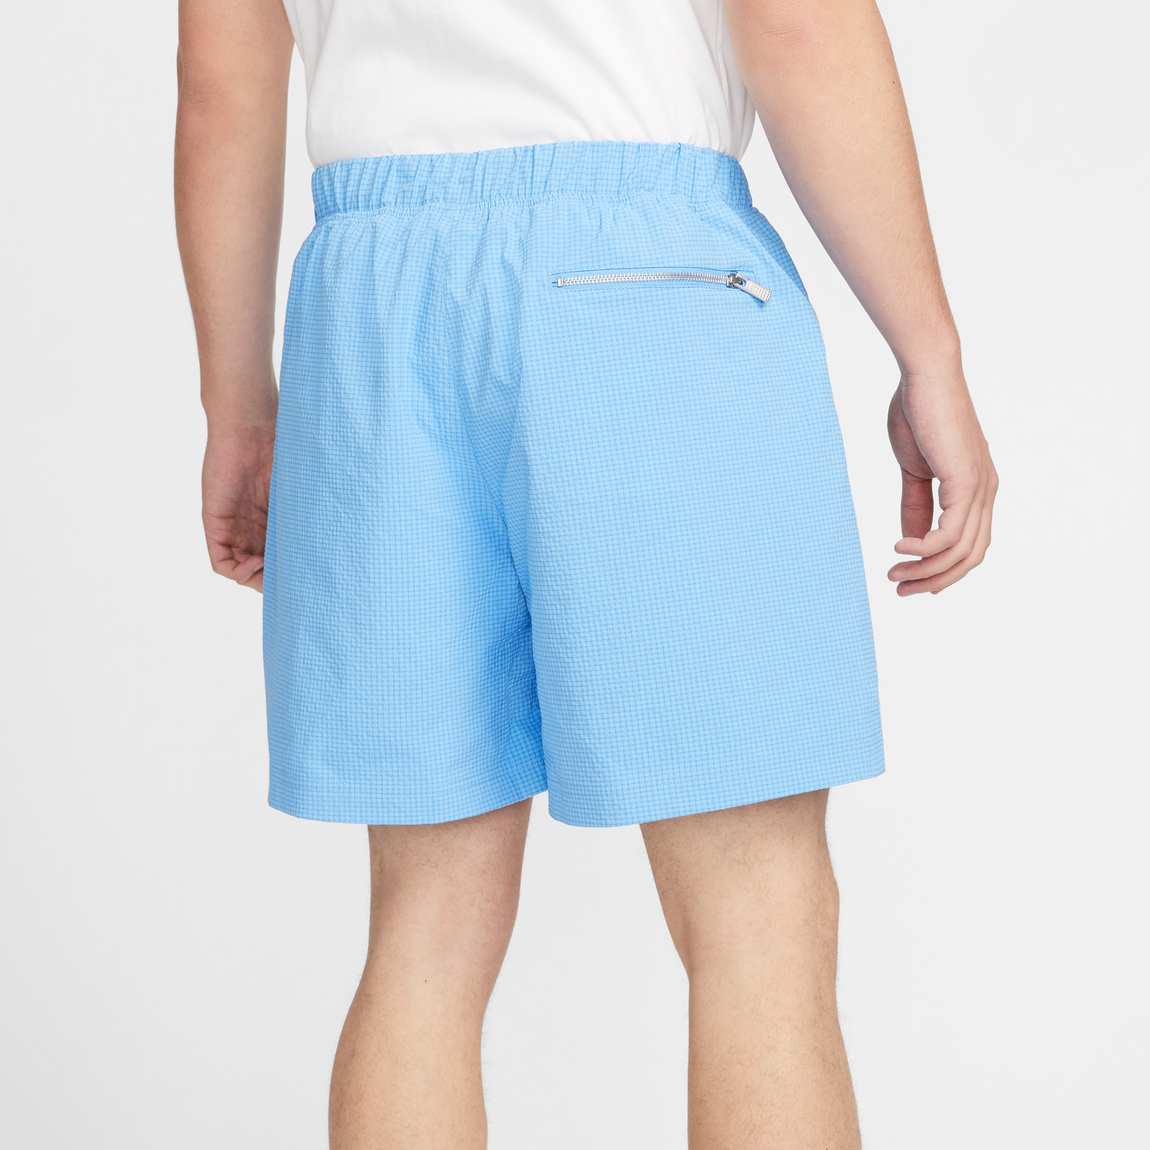 Nike Sportswear Lined Woven Shorts (University Blue) - Nike Sportswear Lined Woven Shorts (University Blue) - 